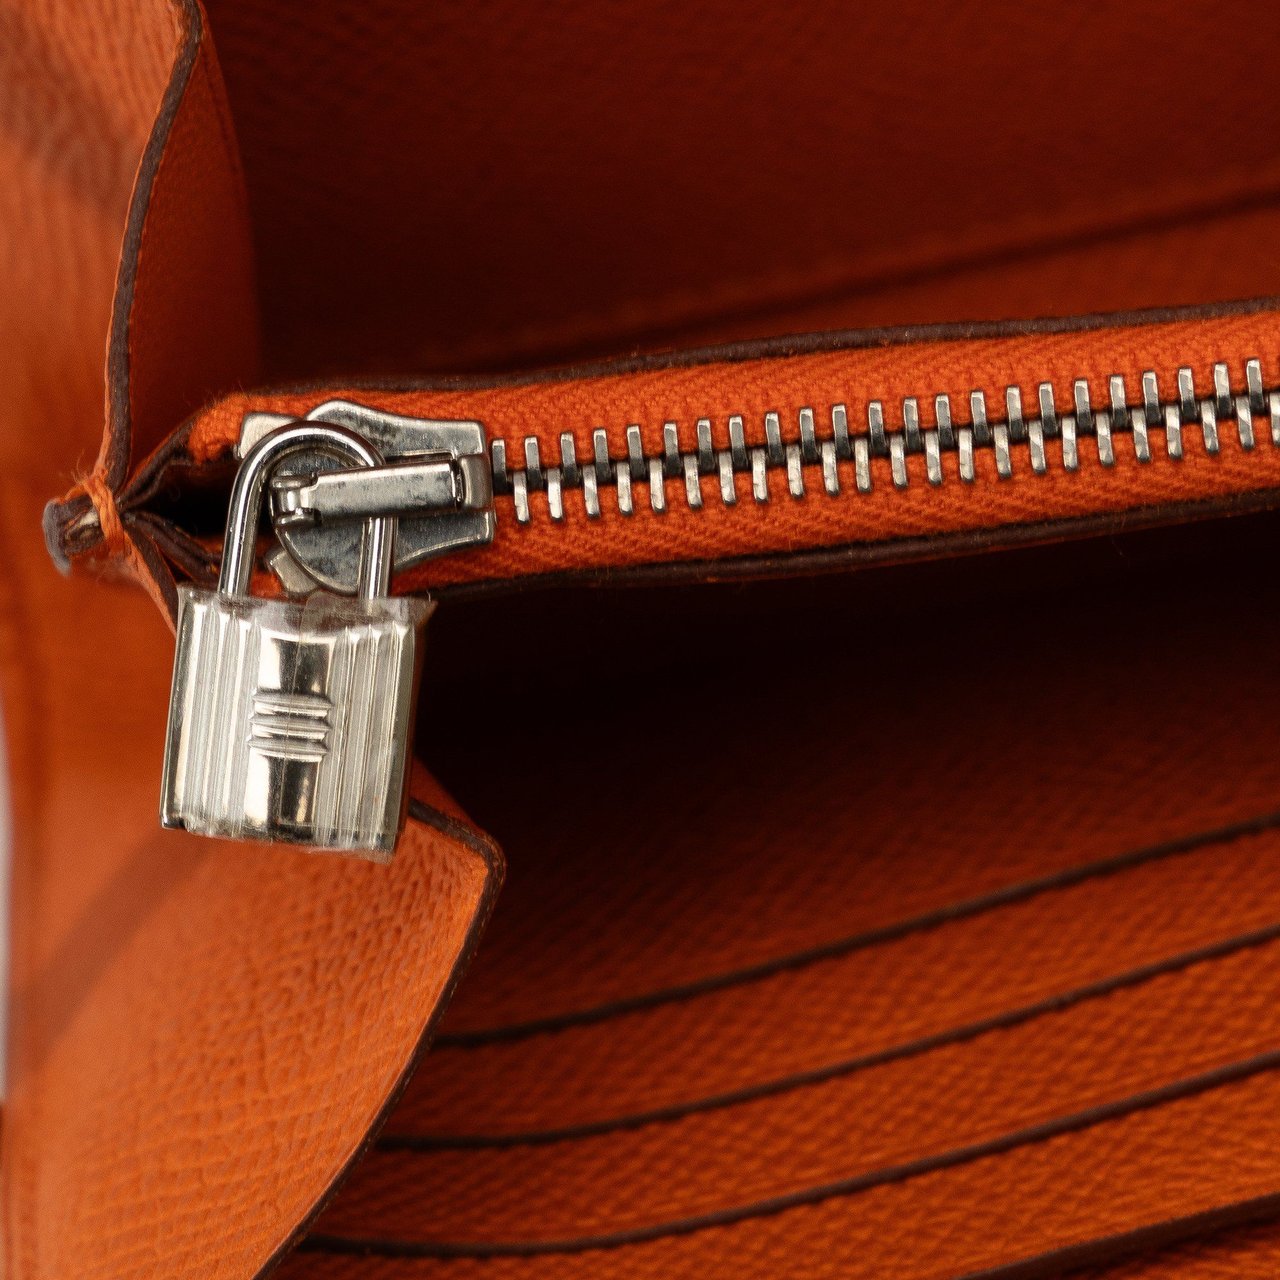 Hermès Epsom Classic Kelly Wallet Oranje